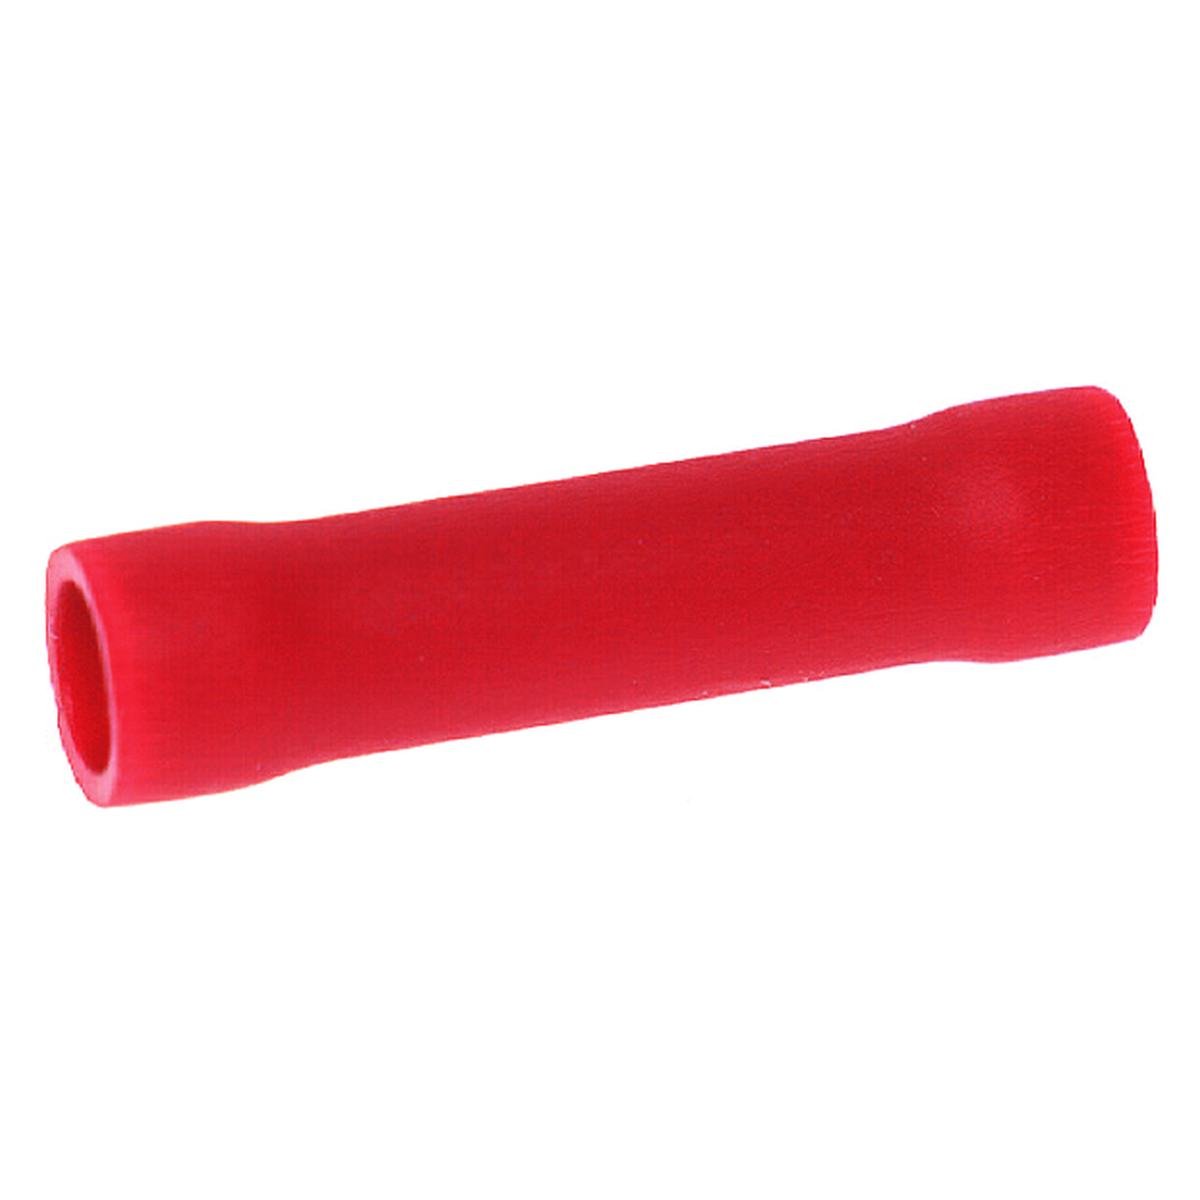 Samlemuffe 0,5 - 1,5 mm². rød pose á 100 stk